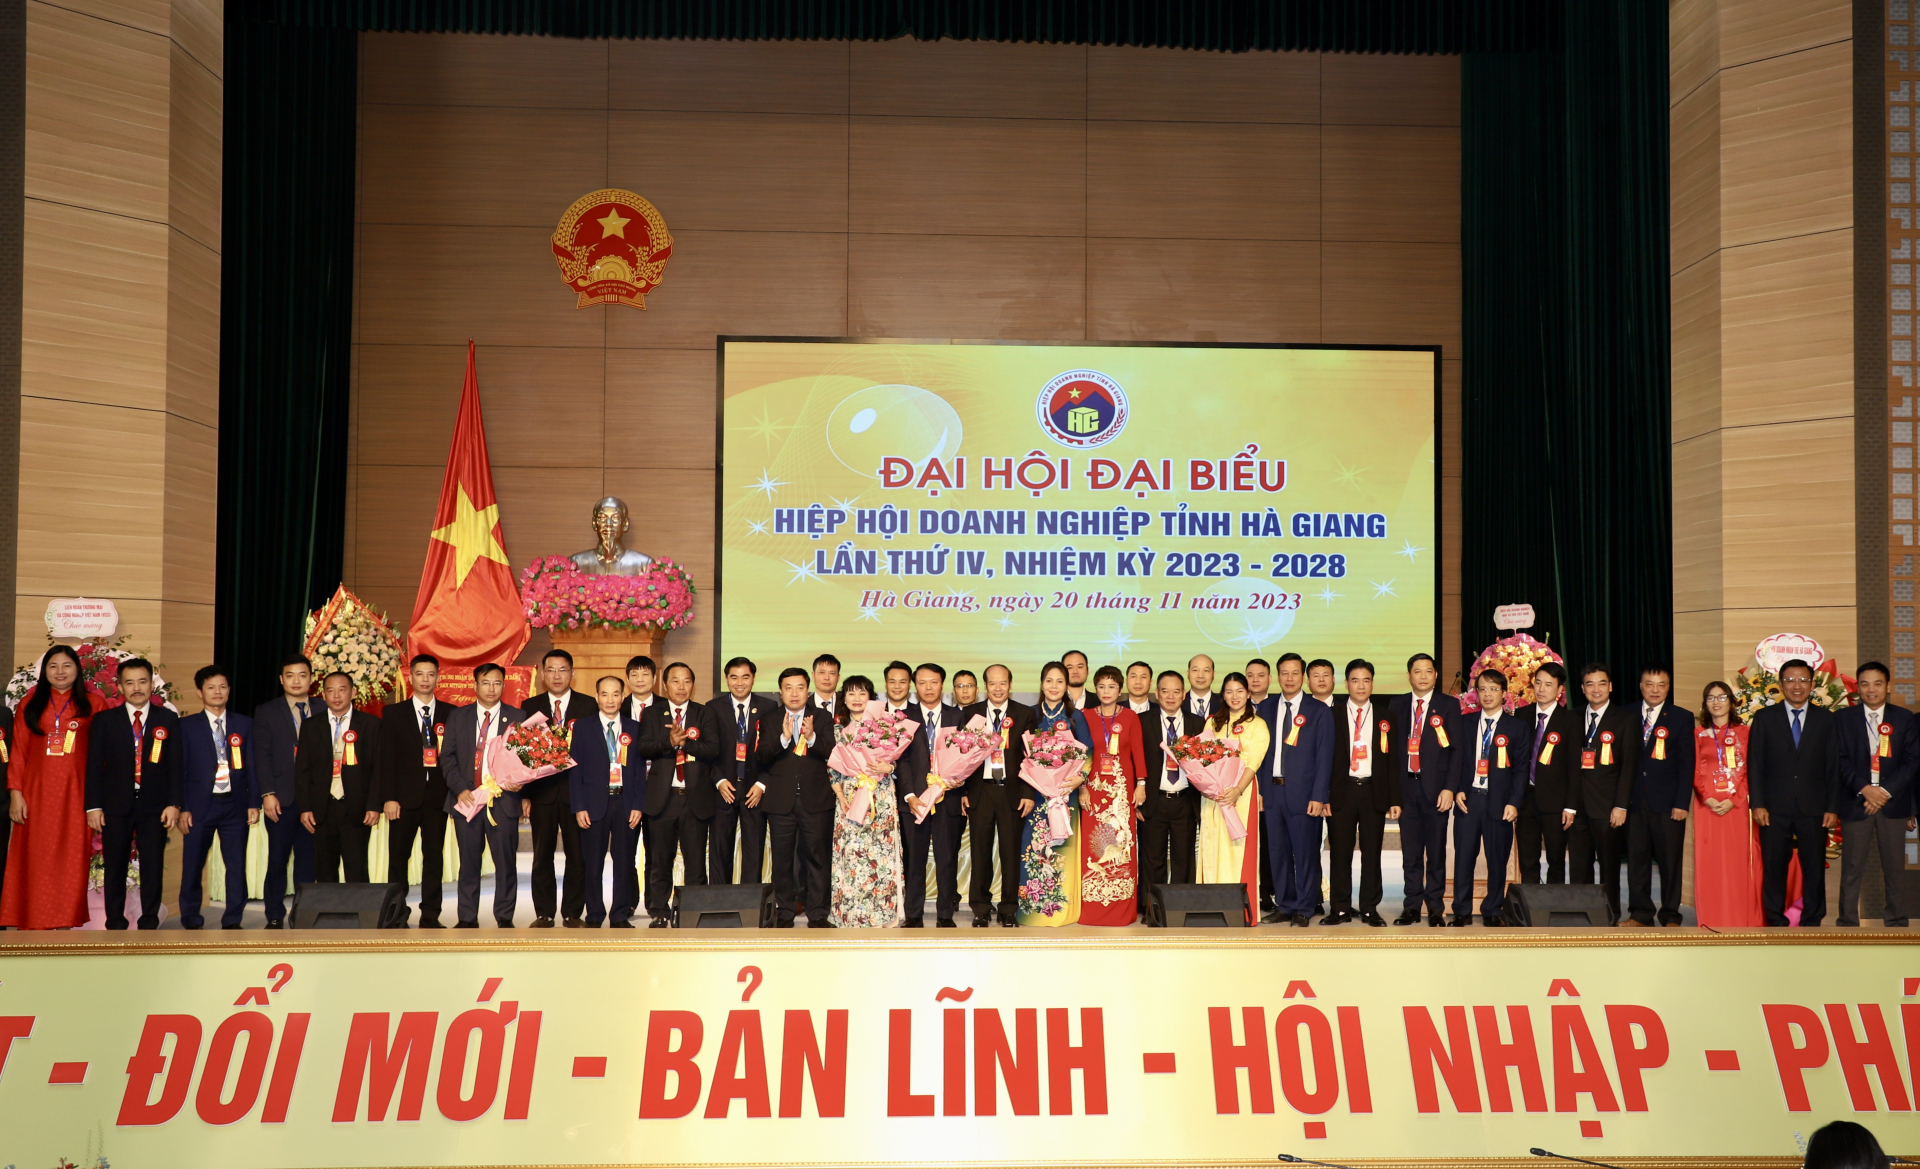 BCH Hiệp hội Doanh nghiệp tỉnh khoá IV ra mắt Đại hội và nhận hoa chúc mừng của lãnh đạo tỉnh